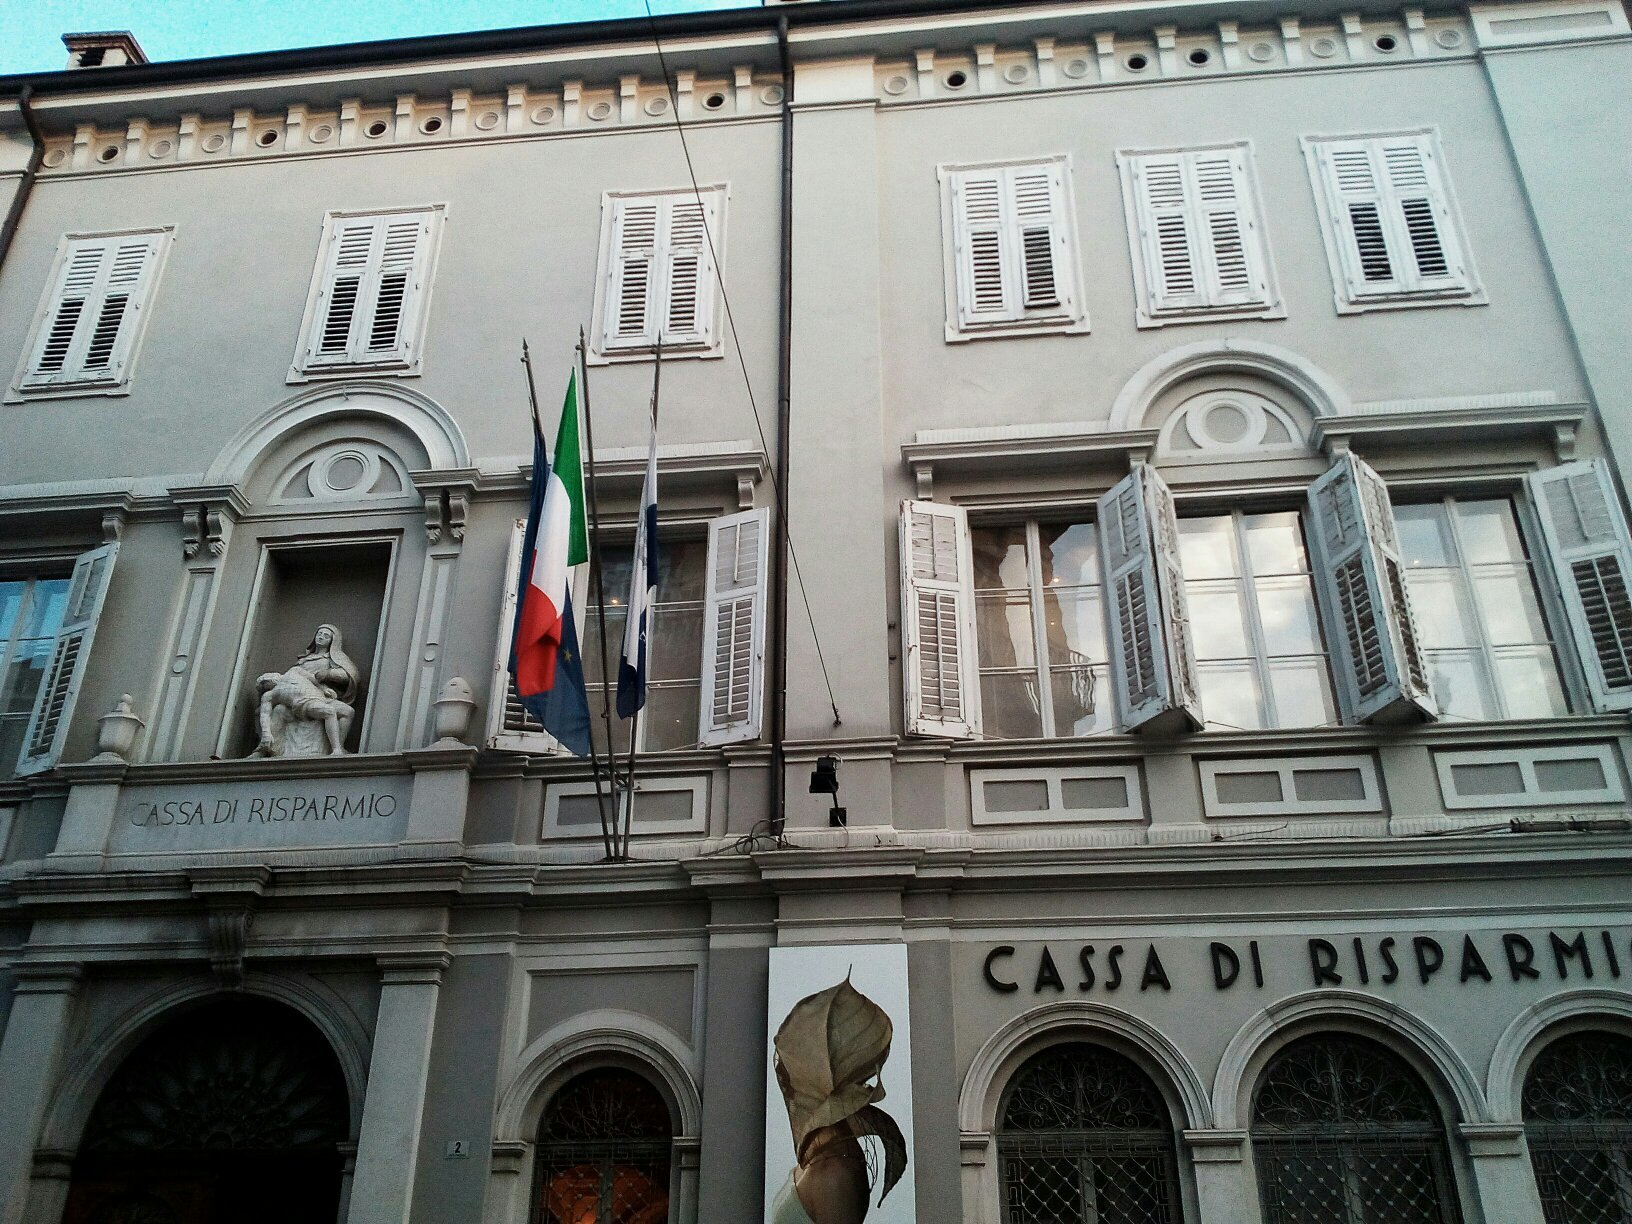 La Pinacoteca della Fondazione Cassa di Risparmio di Gorizia